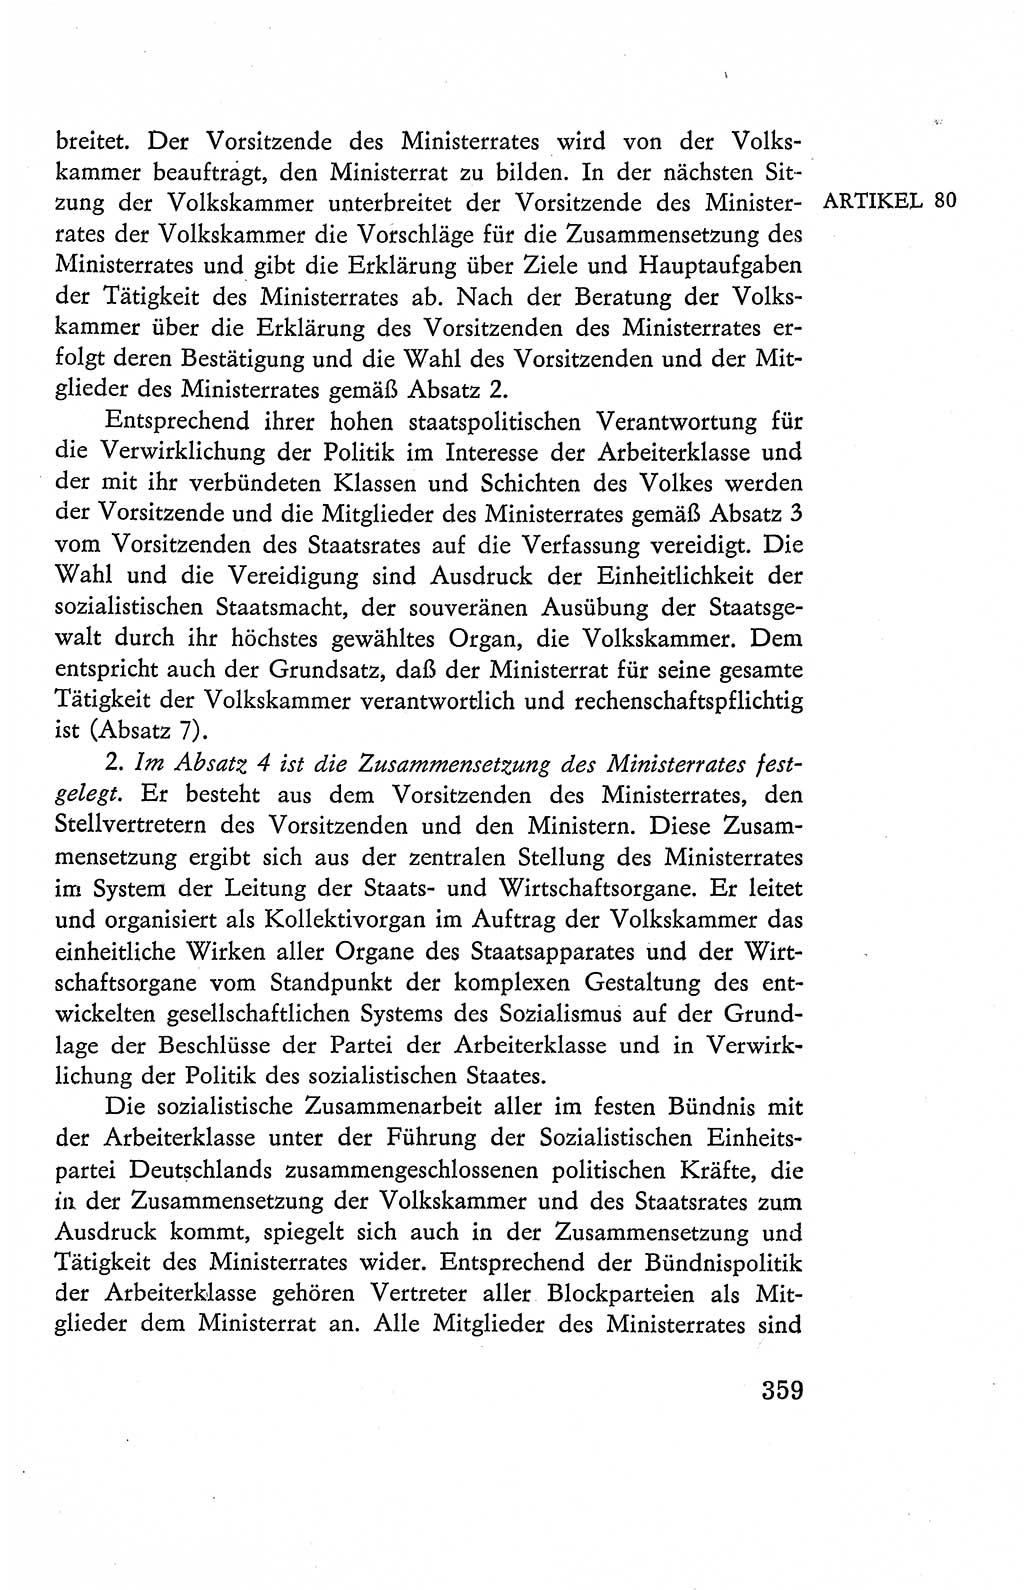 Verfassung der Deutschen Demokratischen Republik (DDR), Dokumente, Kommentar 1969, Band 2, Seite 359 (Verf. DDR Dok. Komm. 1969, Bd. 2, S. 359)